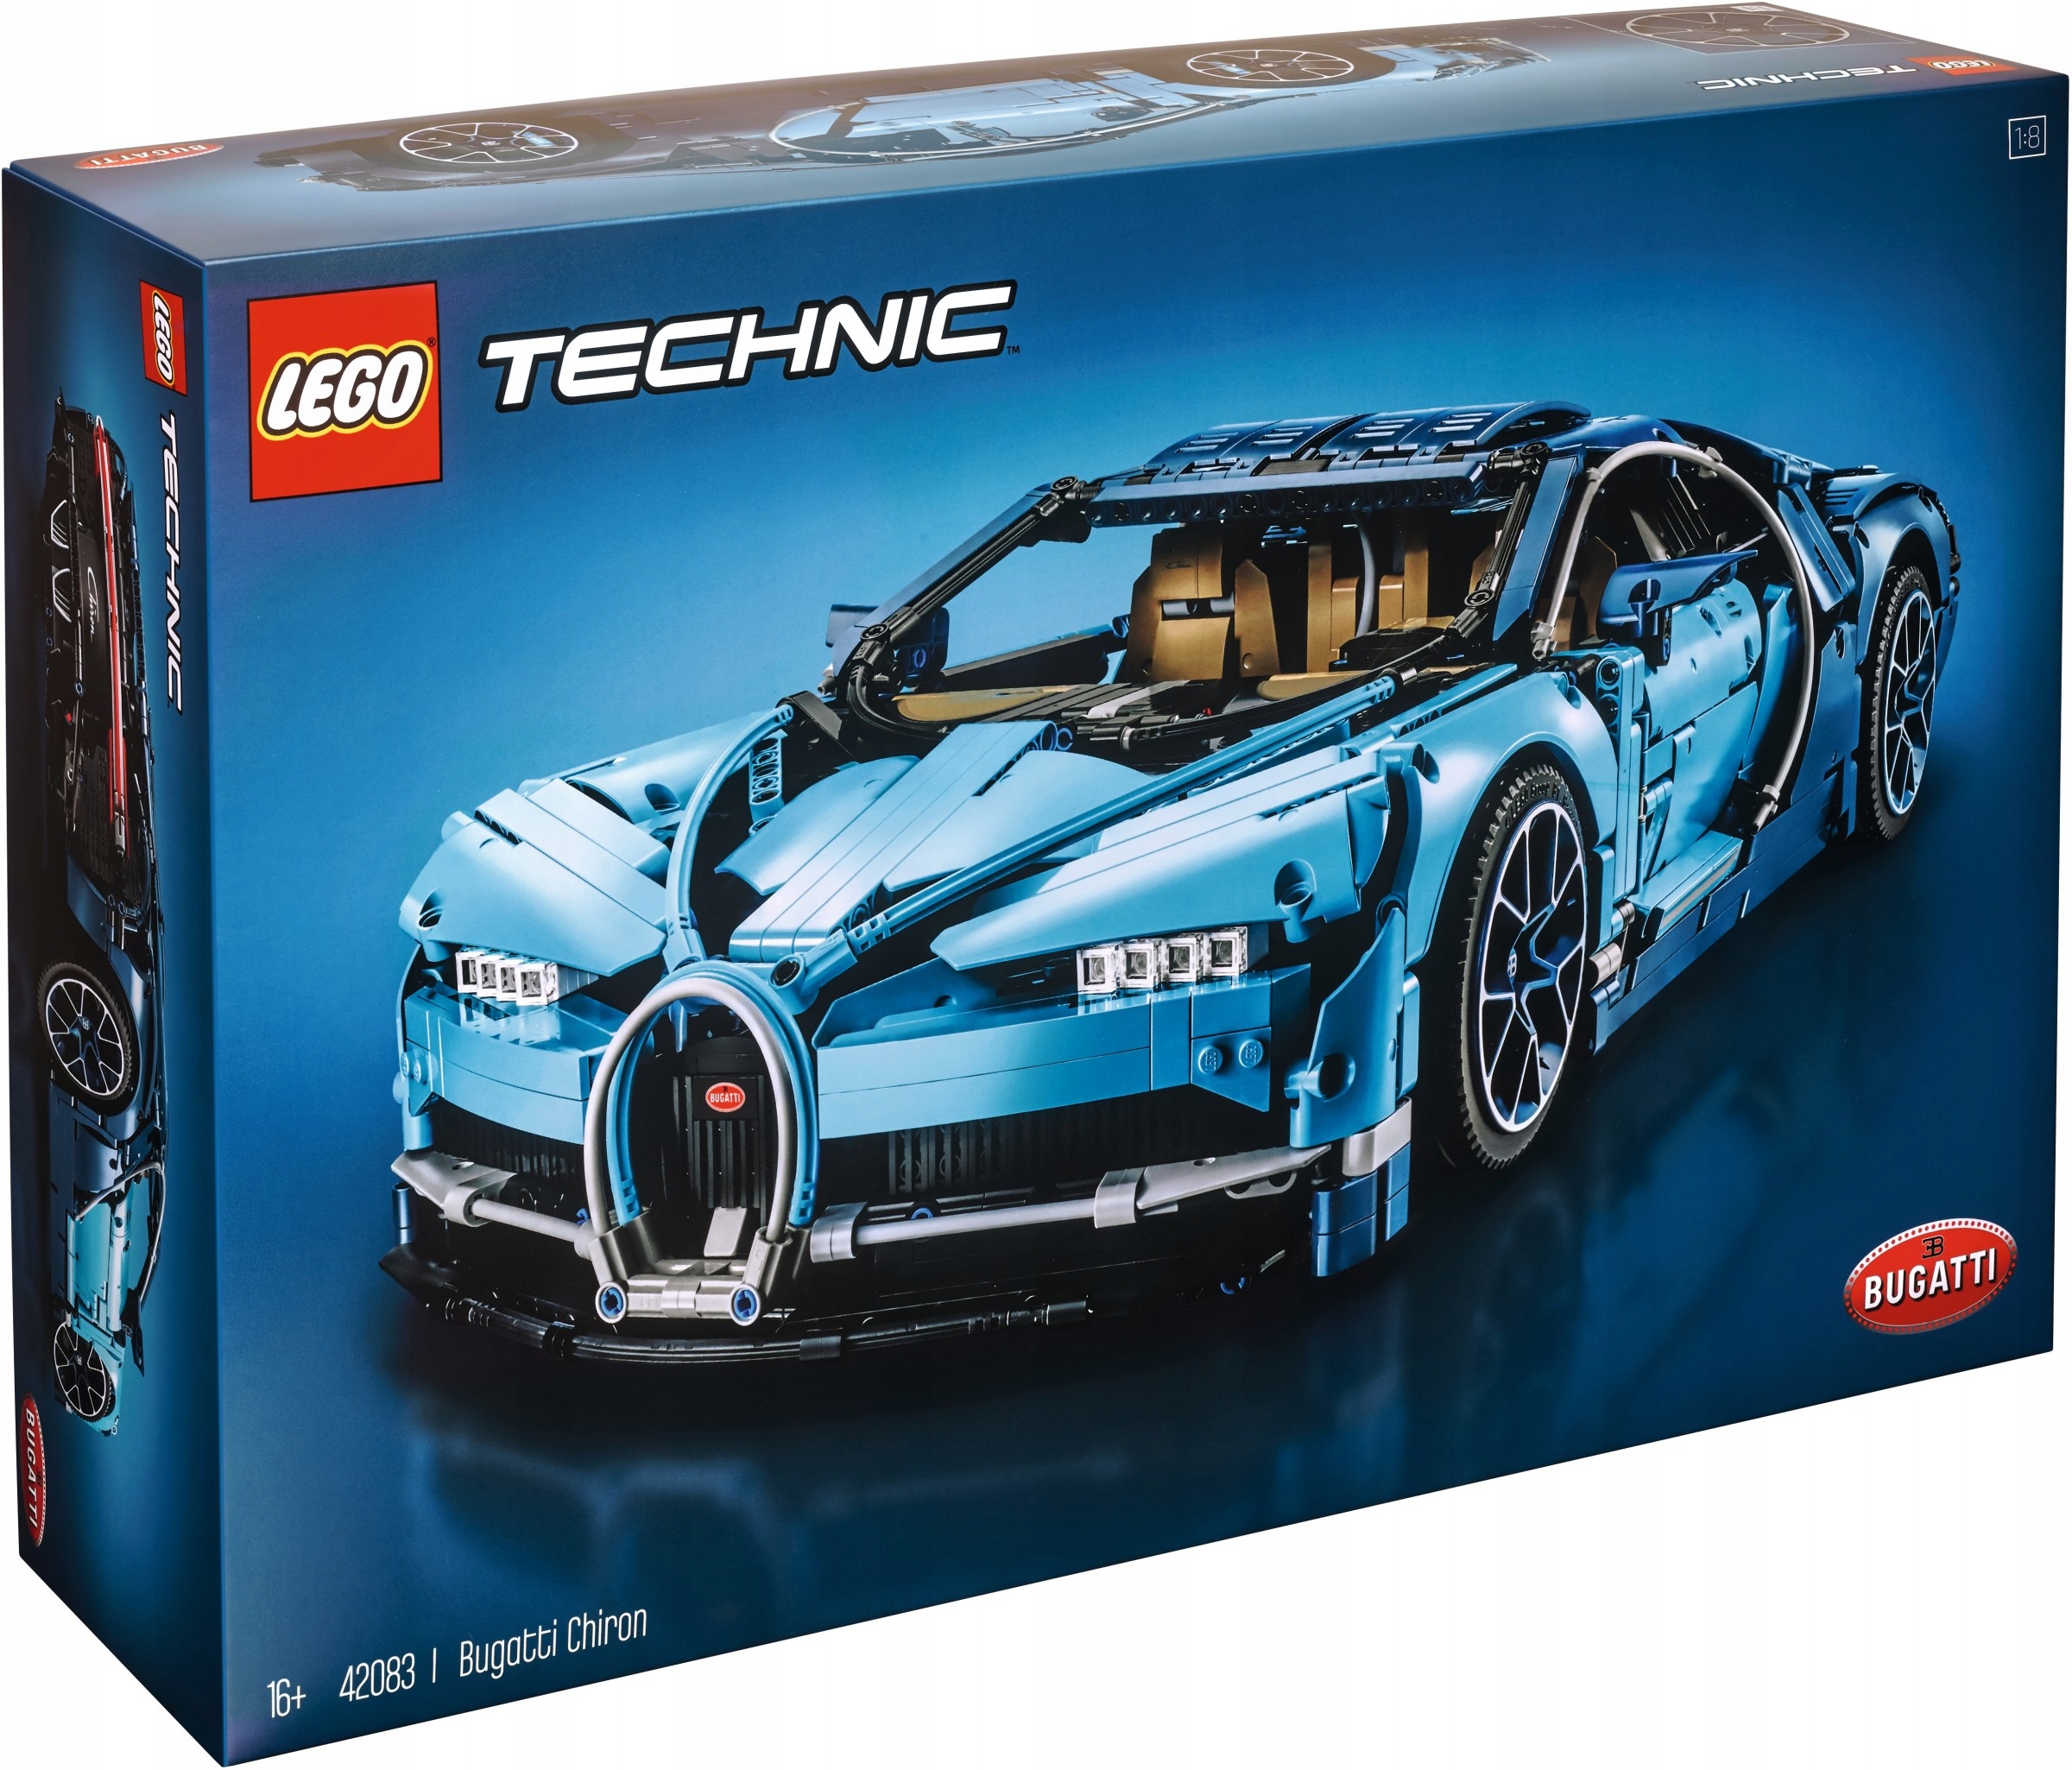 LEGO TECHNIC Bugatti Chiron 42083 7466259538 - Allegro.pl